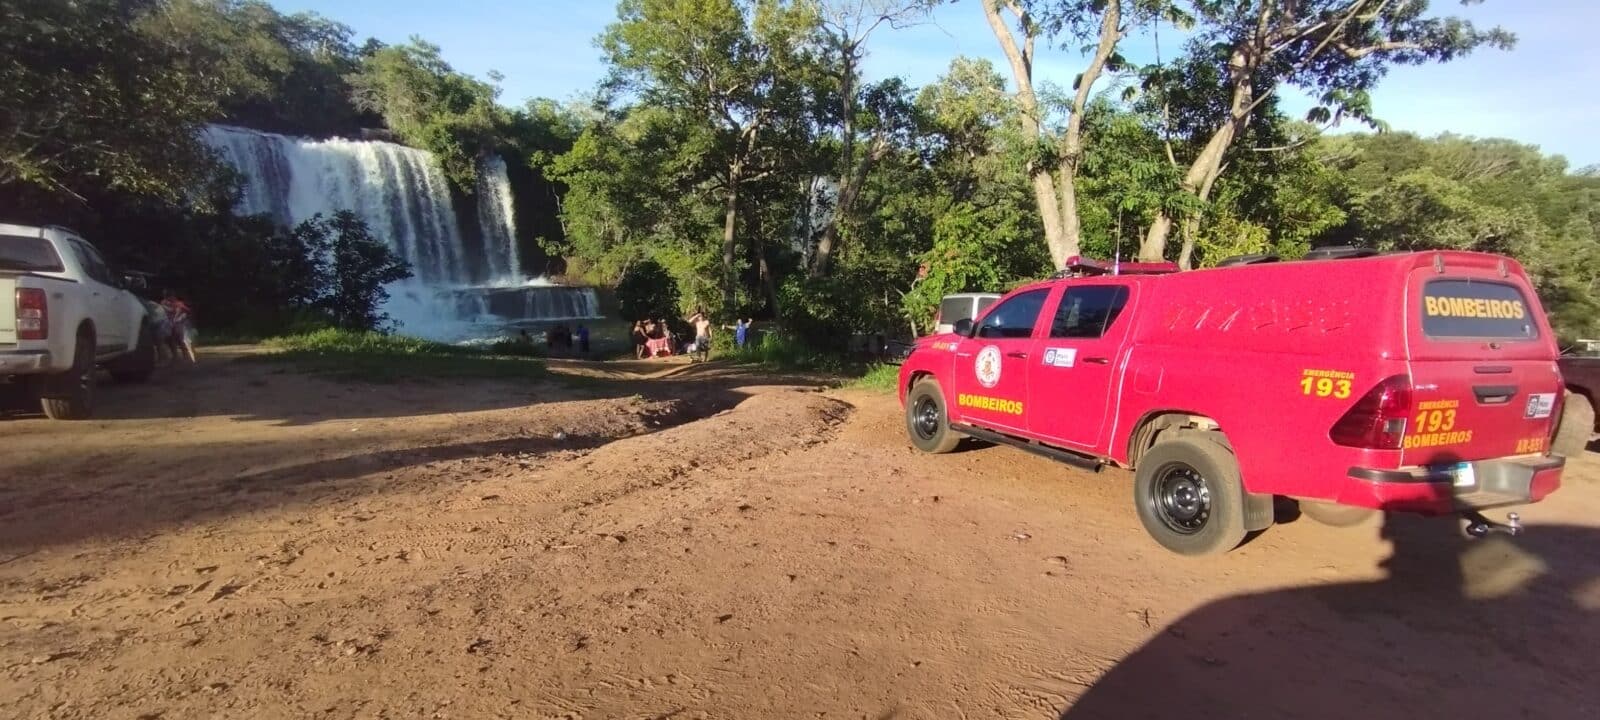 Sargento da Polícia Militar é socorrido após se afogar em cachoeira